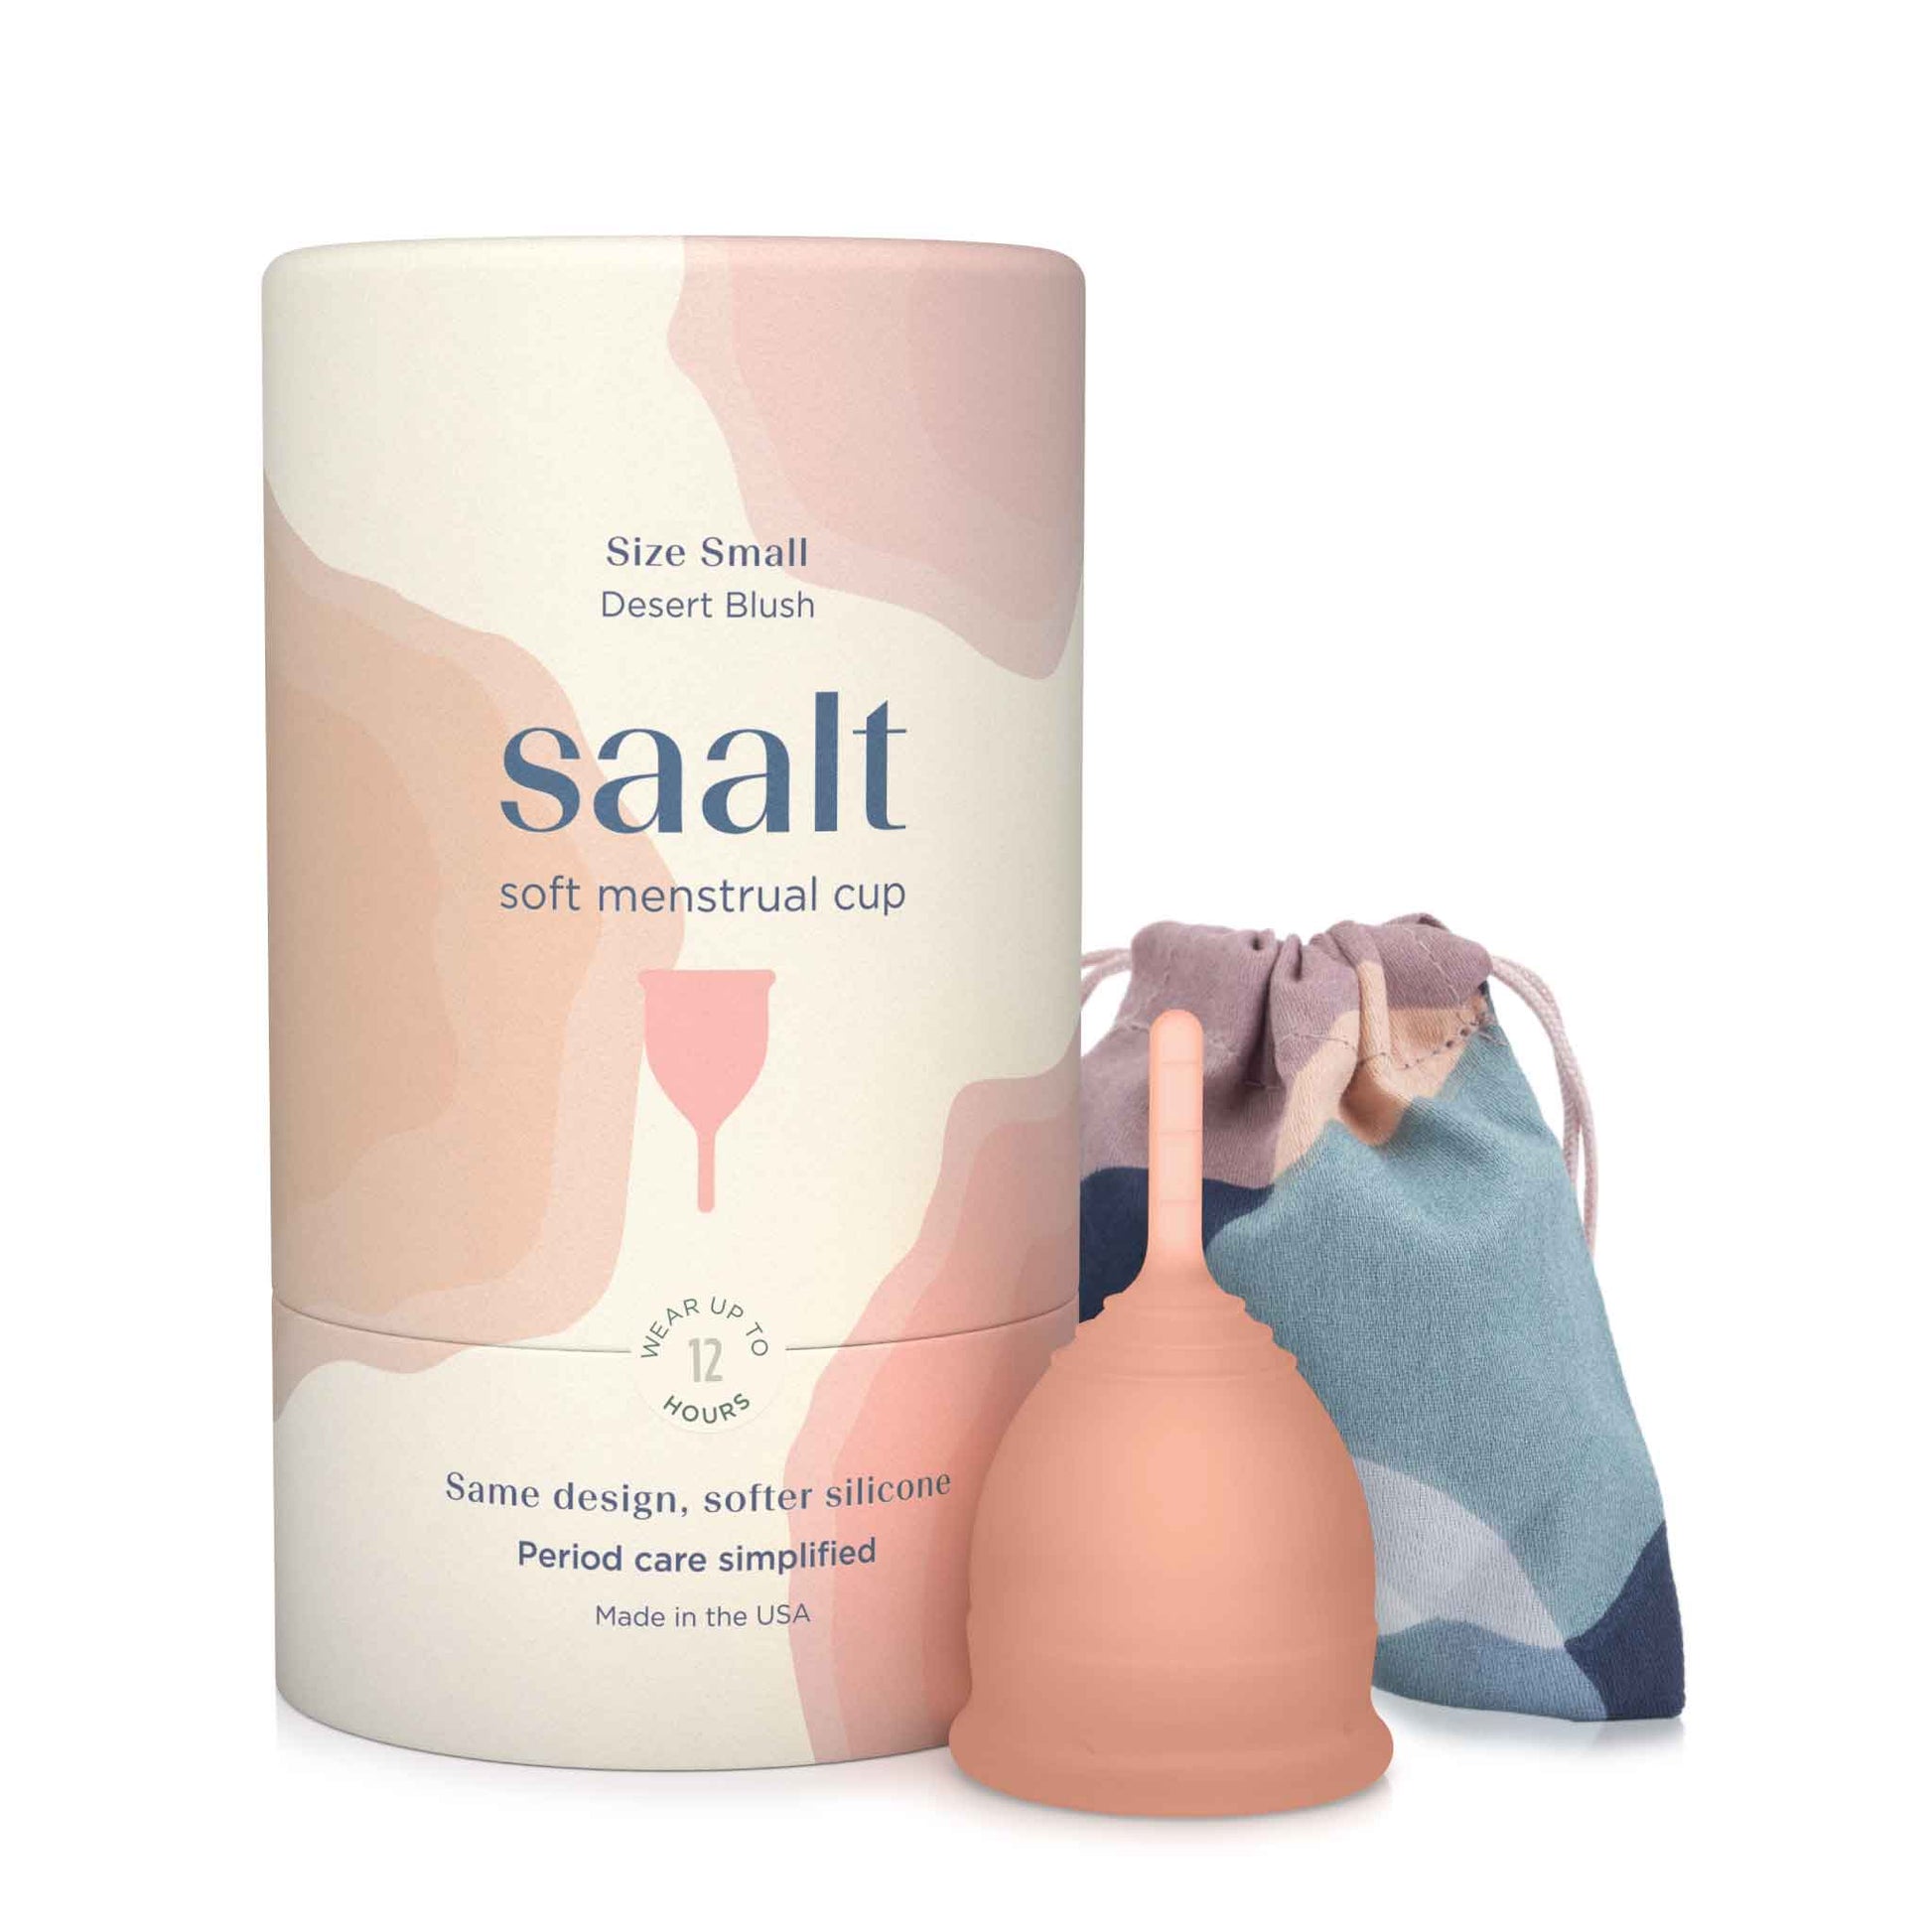 Saalt - Saalt Soft Menstrual Cup: Regular / Desert Blush Saalt